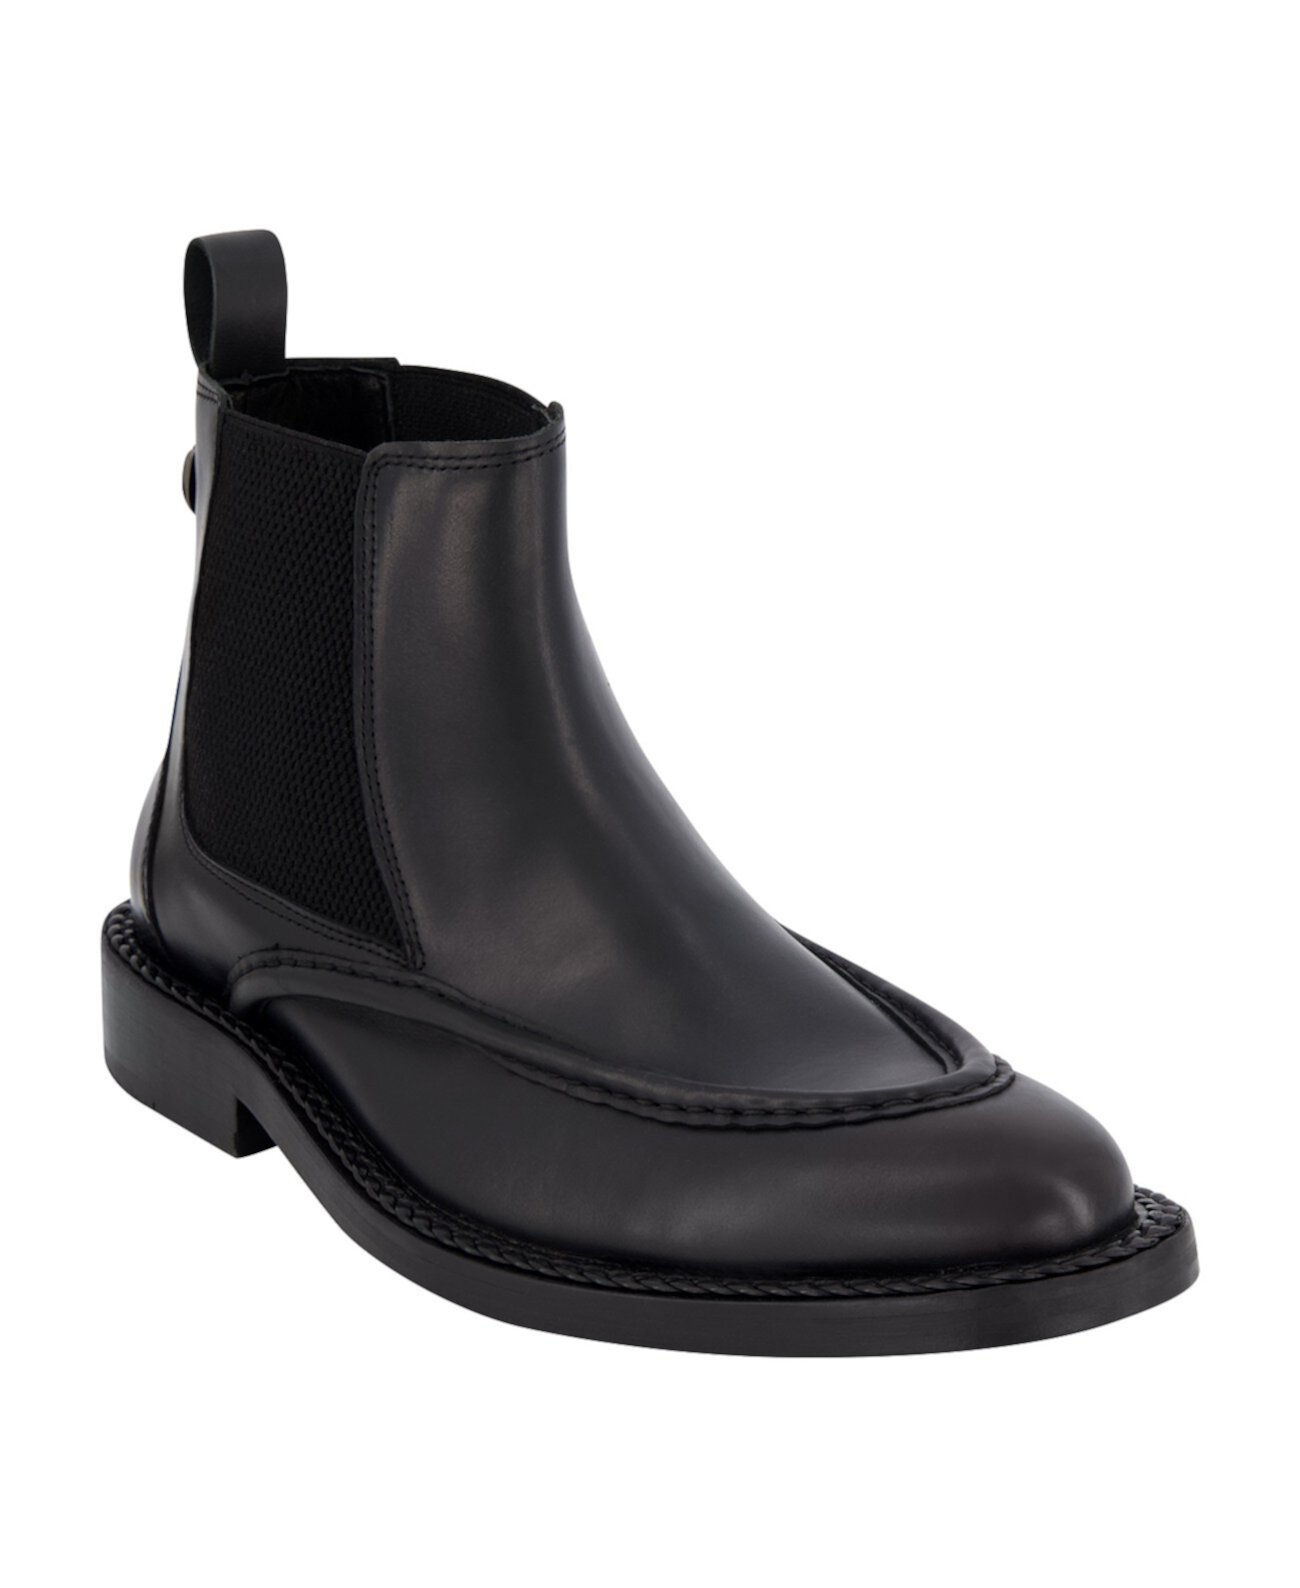 Men's Leather Moc Toe Chelsea Boots Karl Lagerfeld Paris